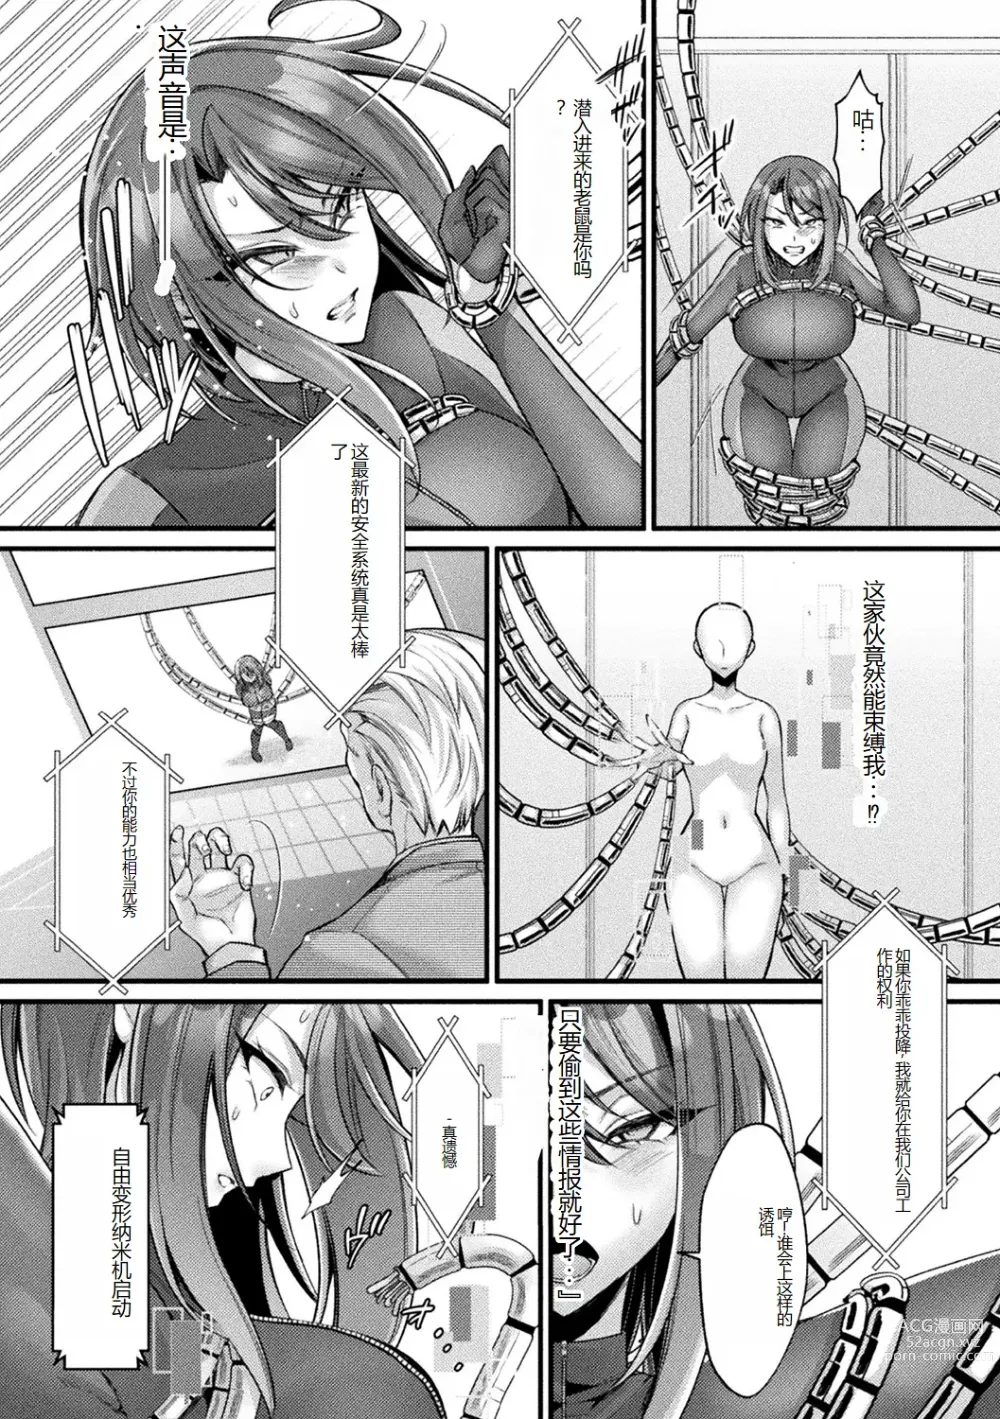 Page 7 of manga Bessatsu Comic Unreal AI ni Wakaraserareru Jinrui Hen Vol. 1